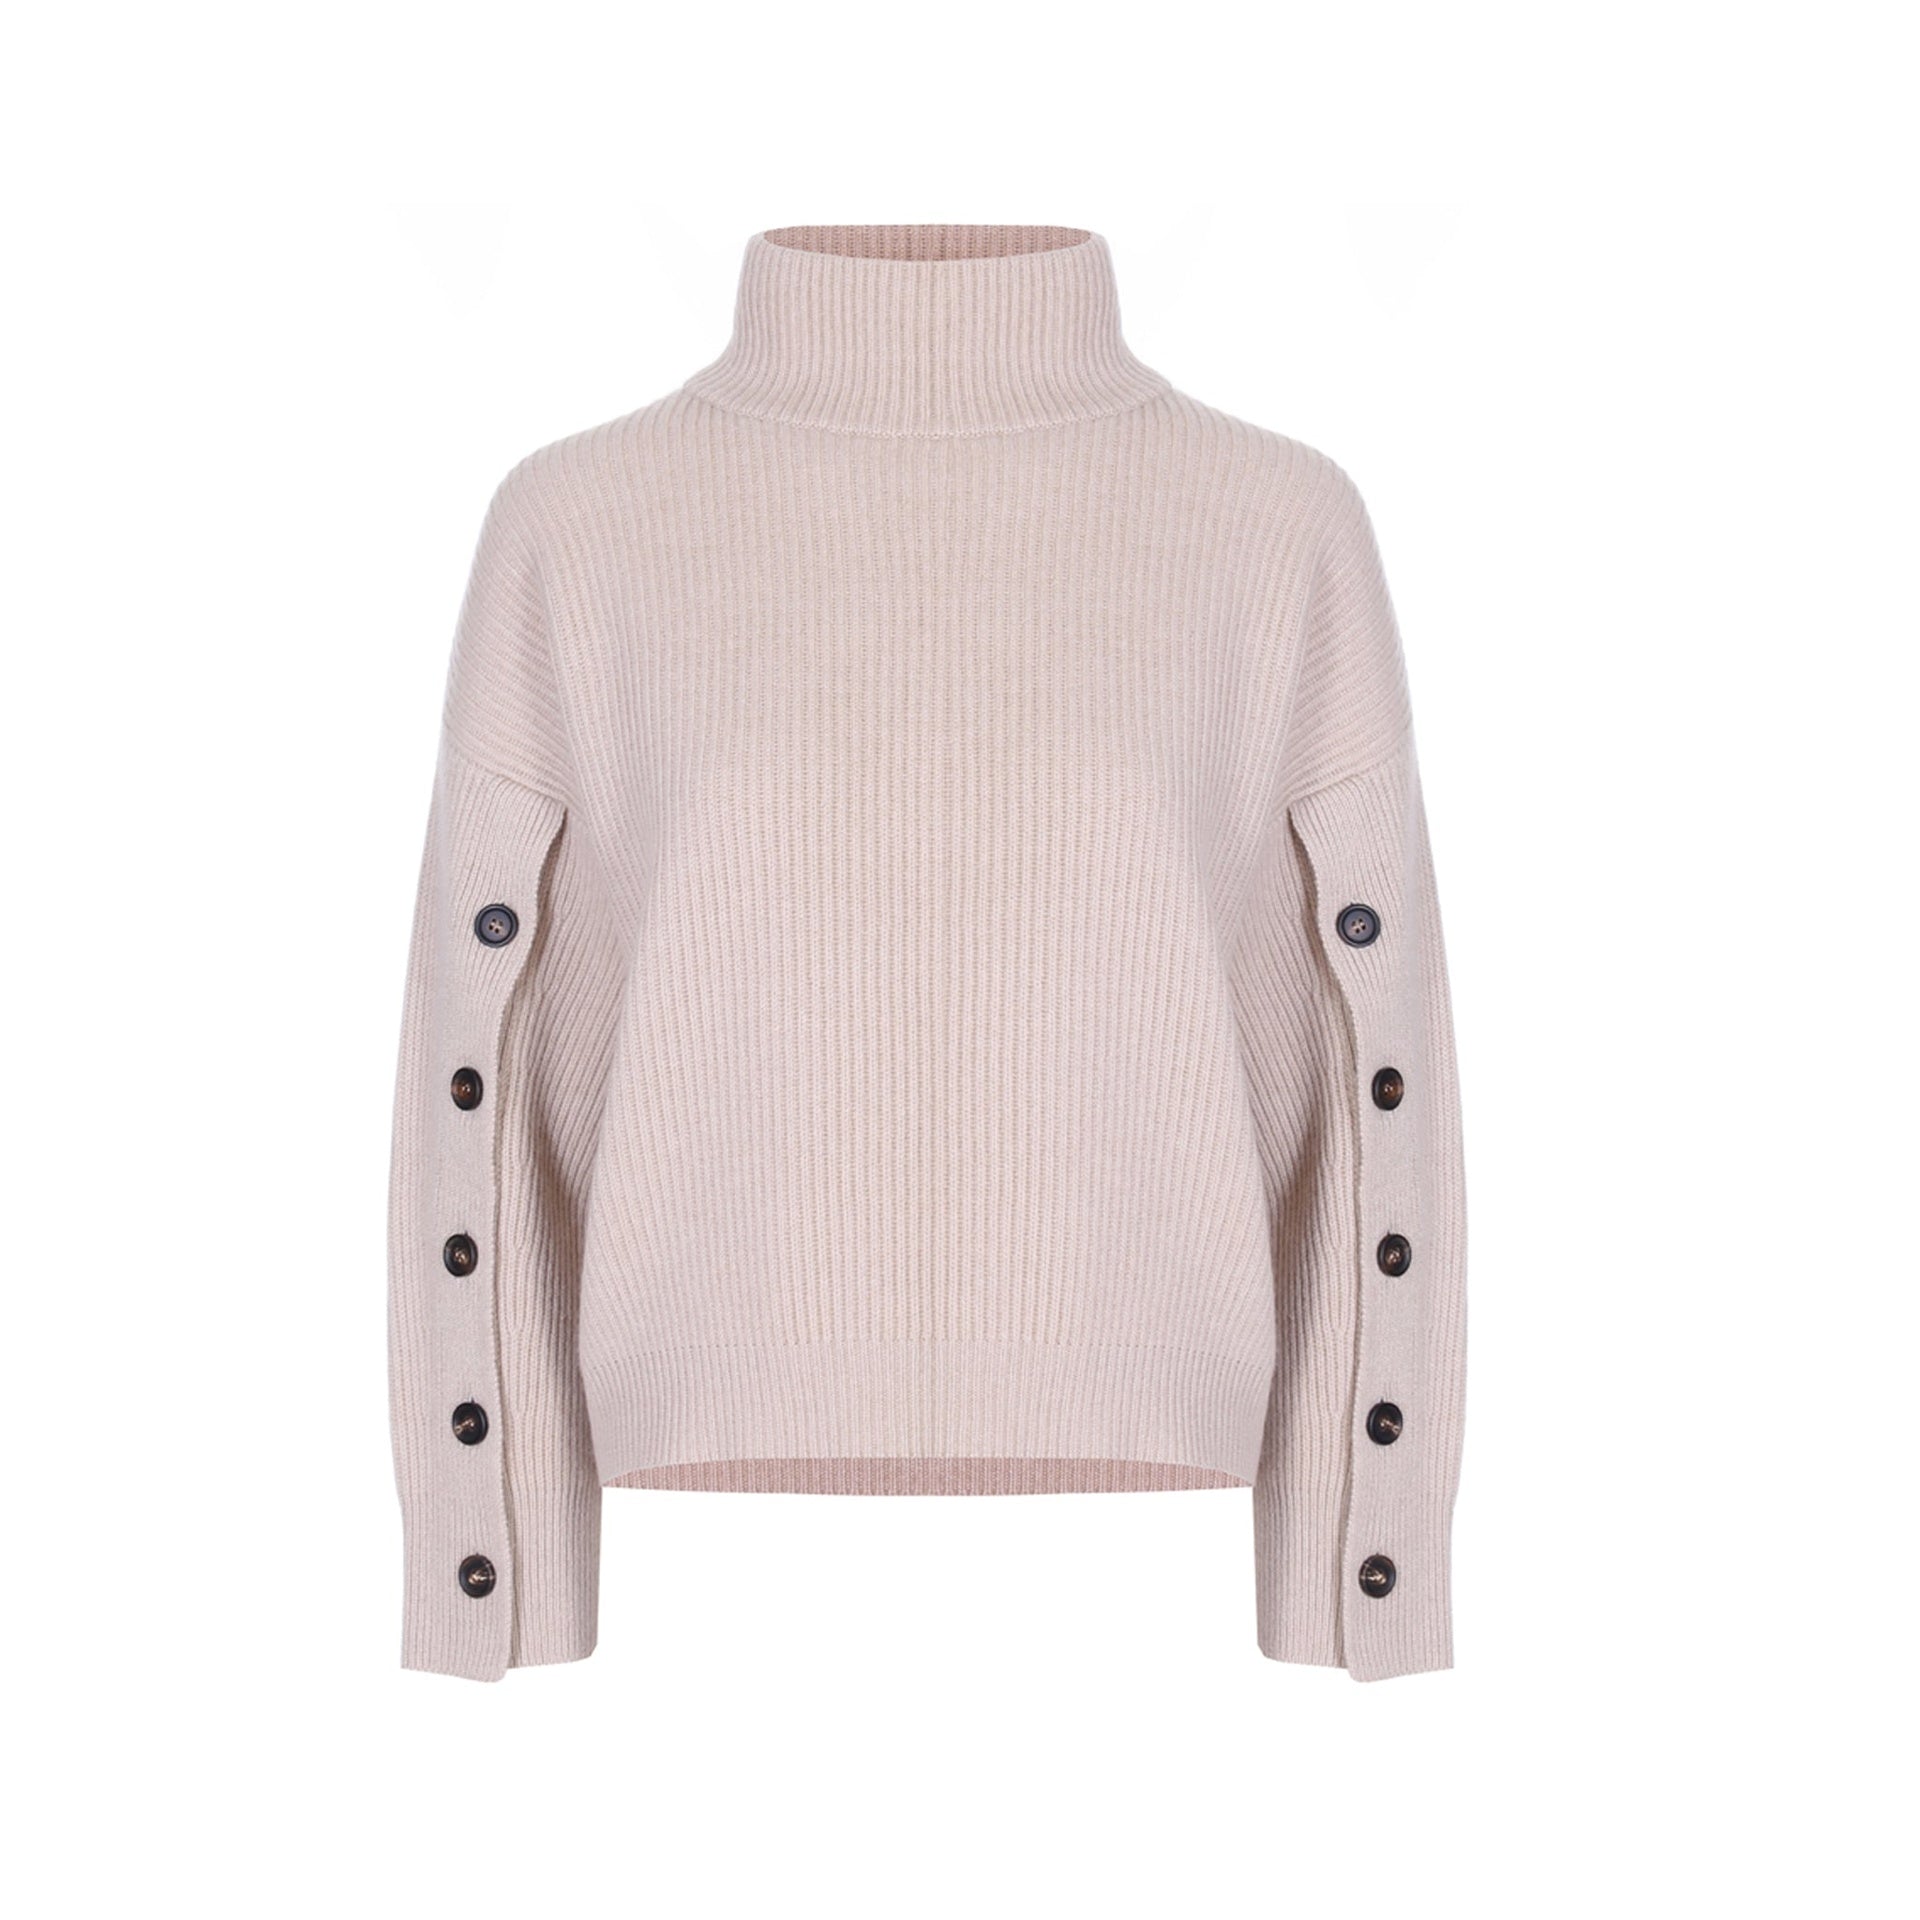 Brunello Cucinelli Cashmere Sweater